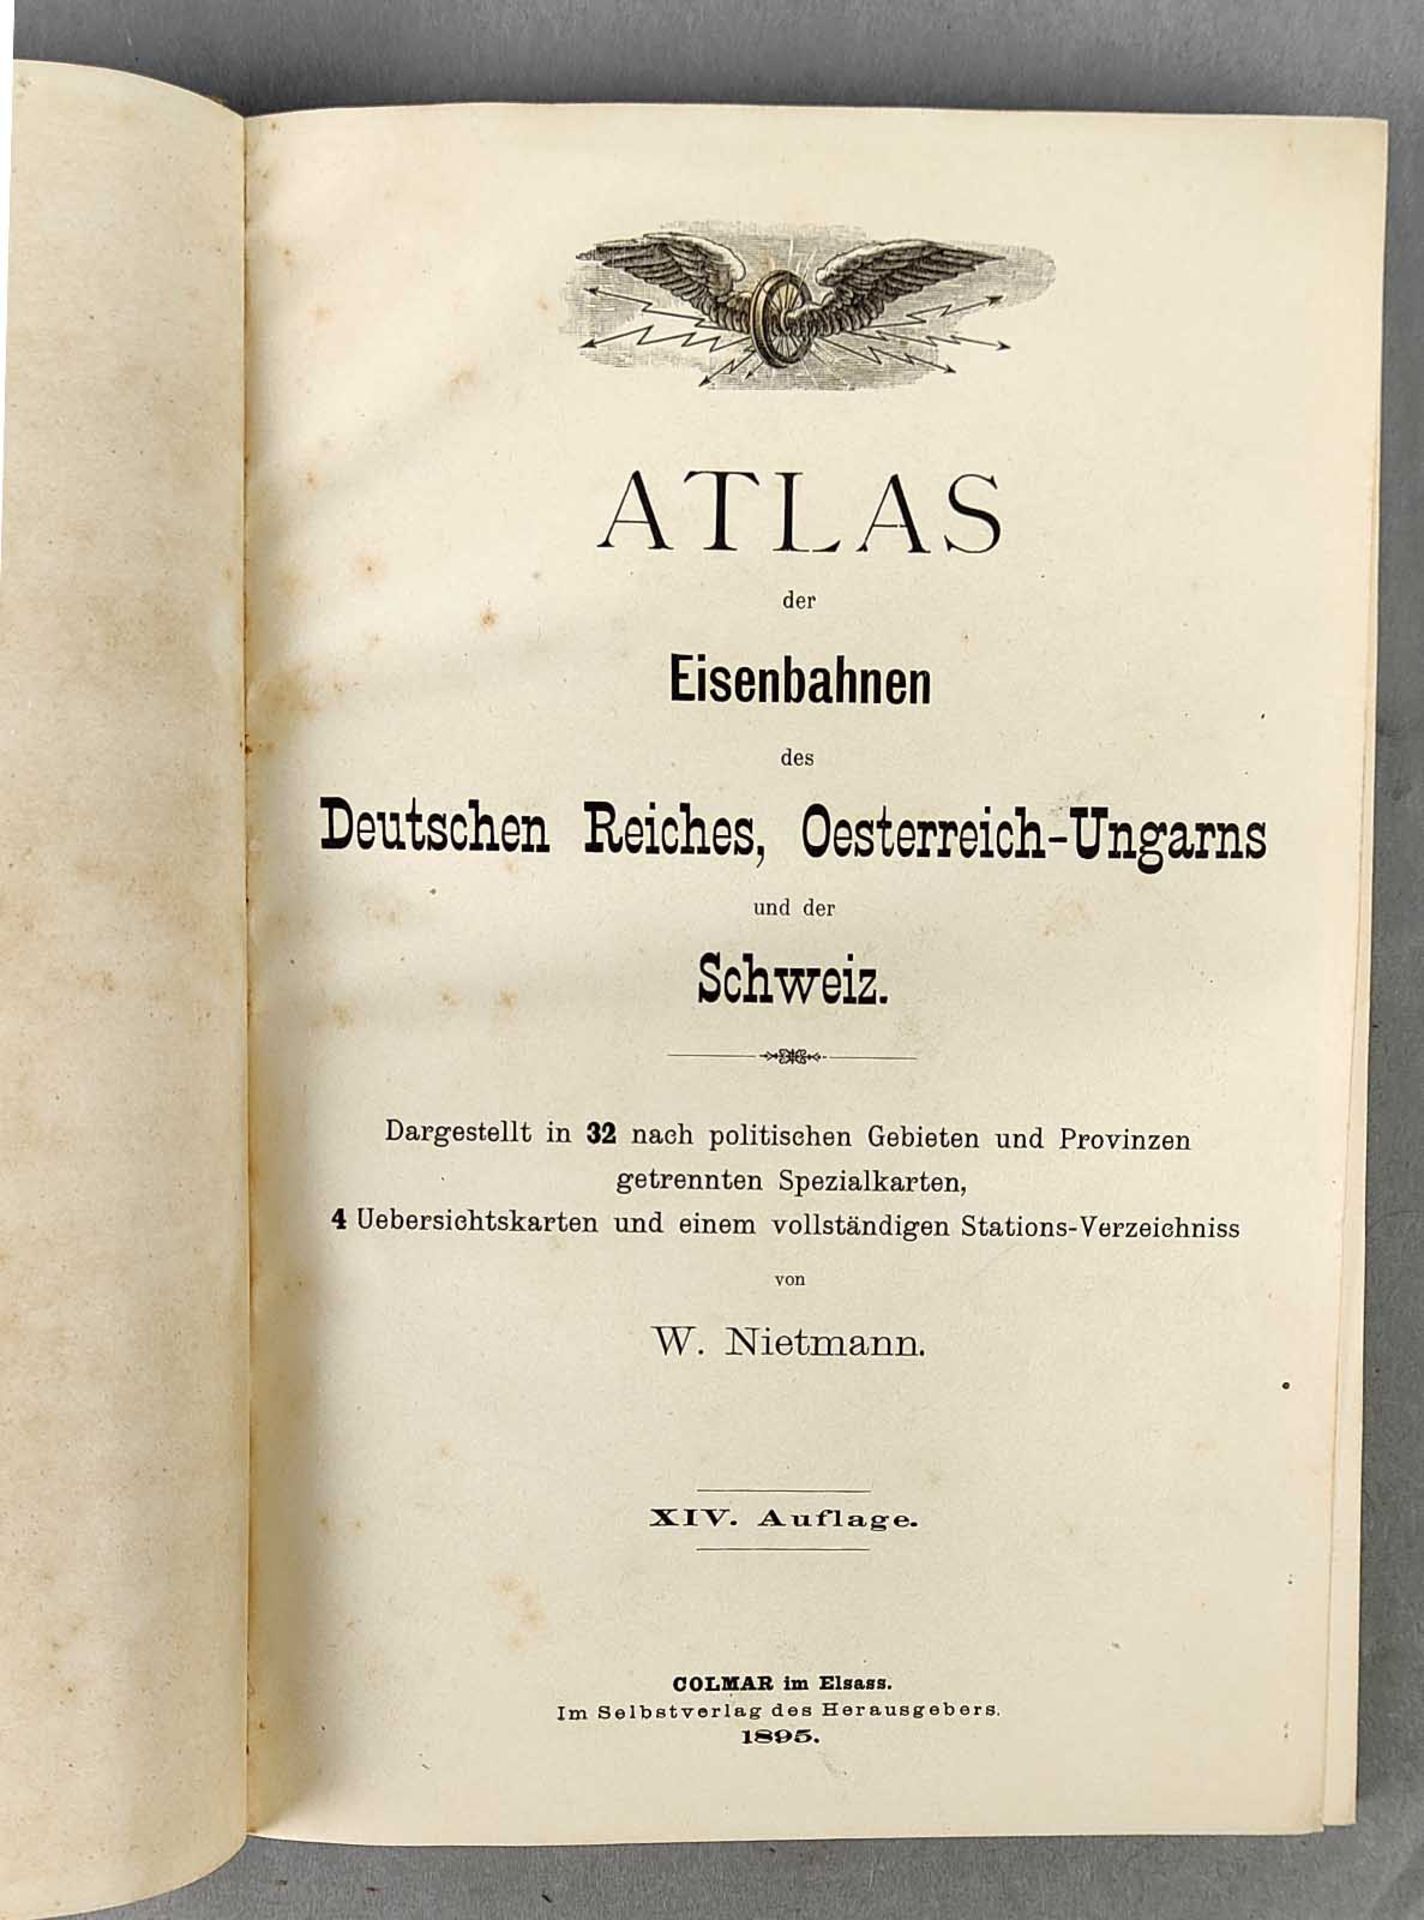 Atlas der Eisenbahnen 1895 - Bild 2 aus 3